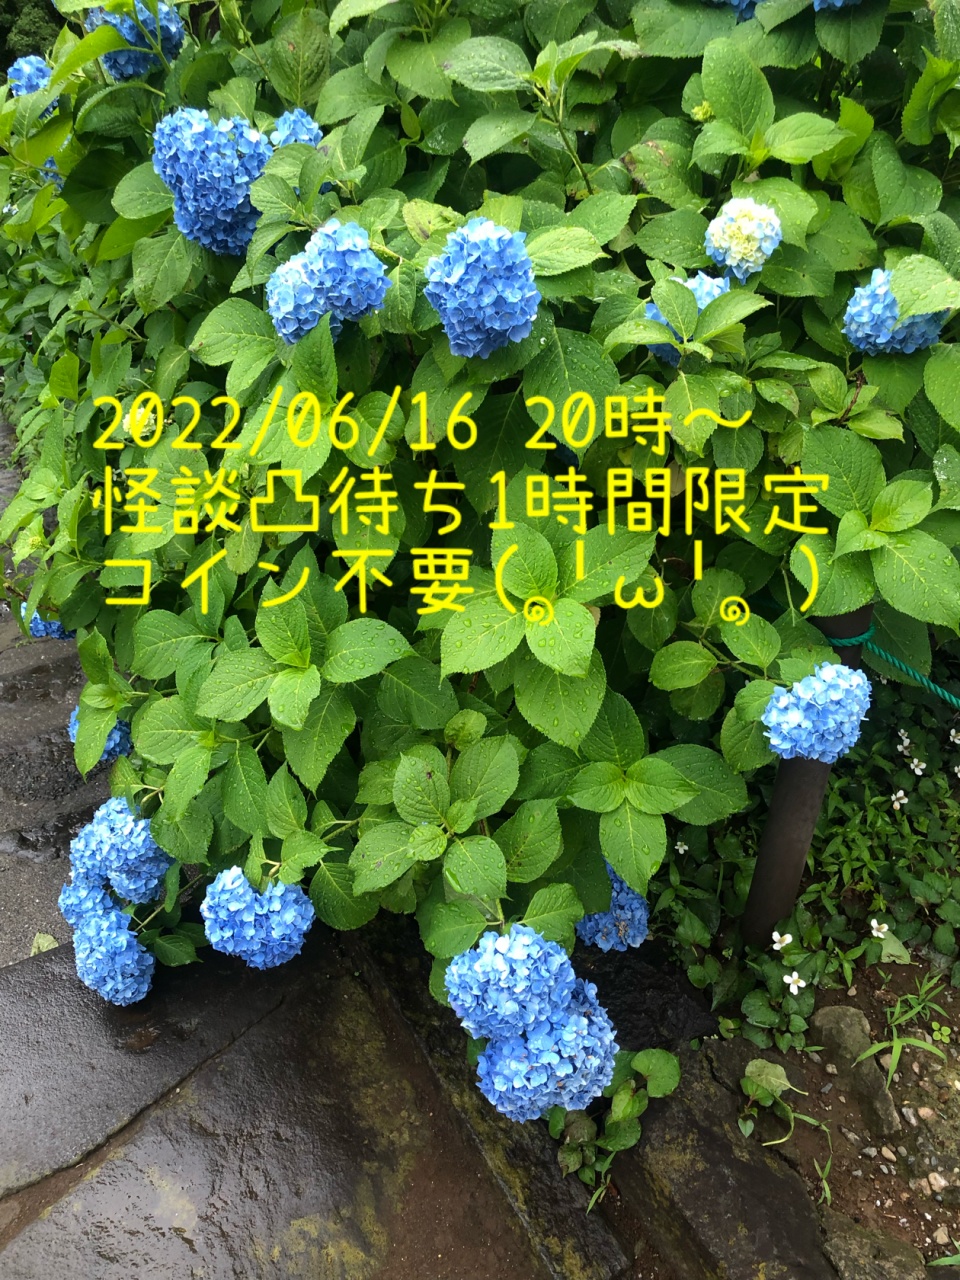 2022/06/16 20時〜1時間限定(コイン不要🙏)
